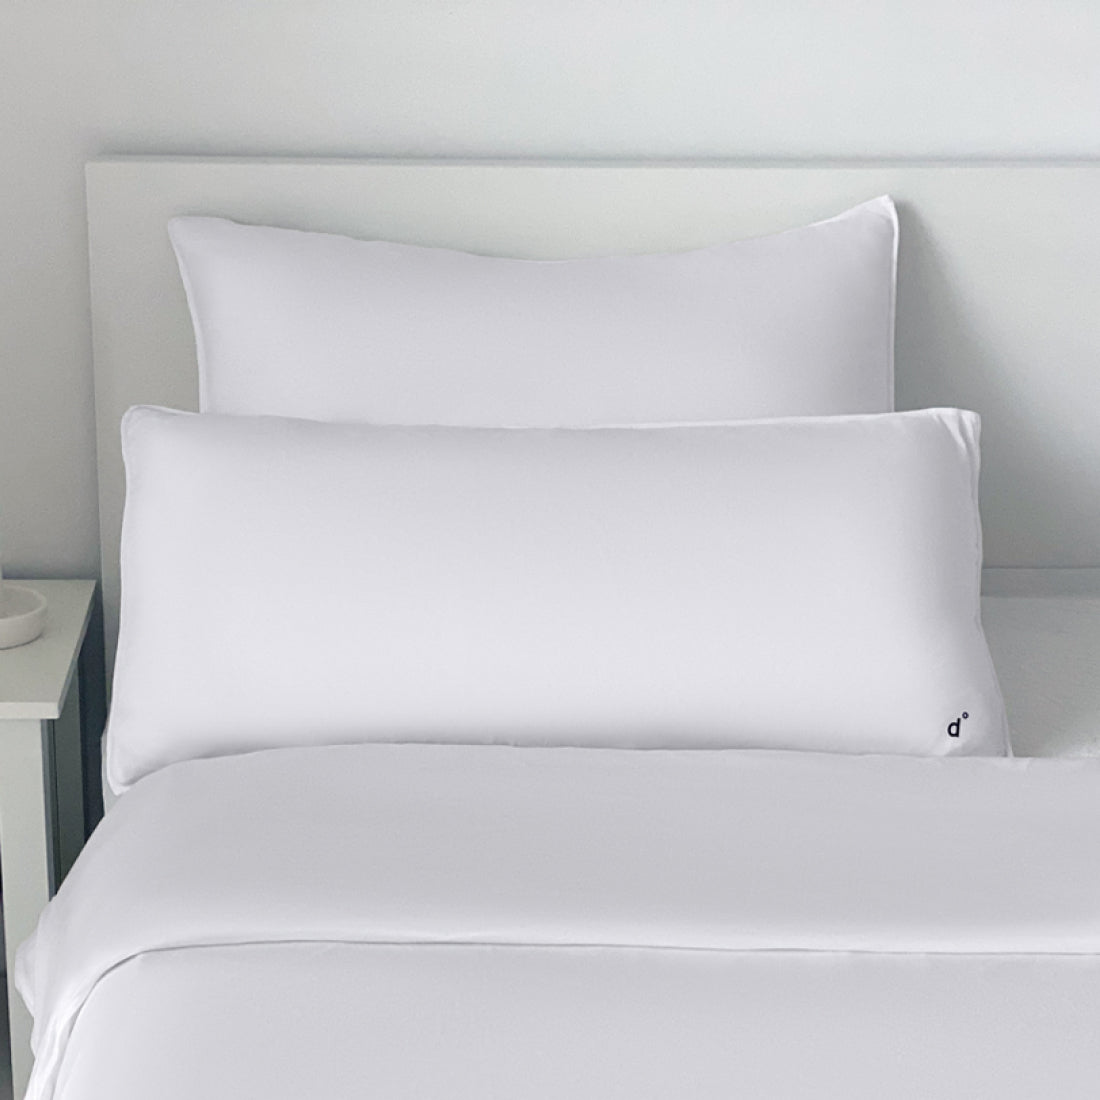 Pillowcase || White